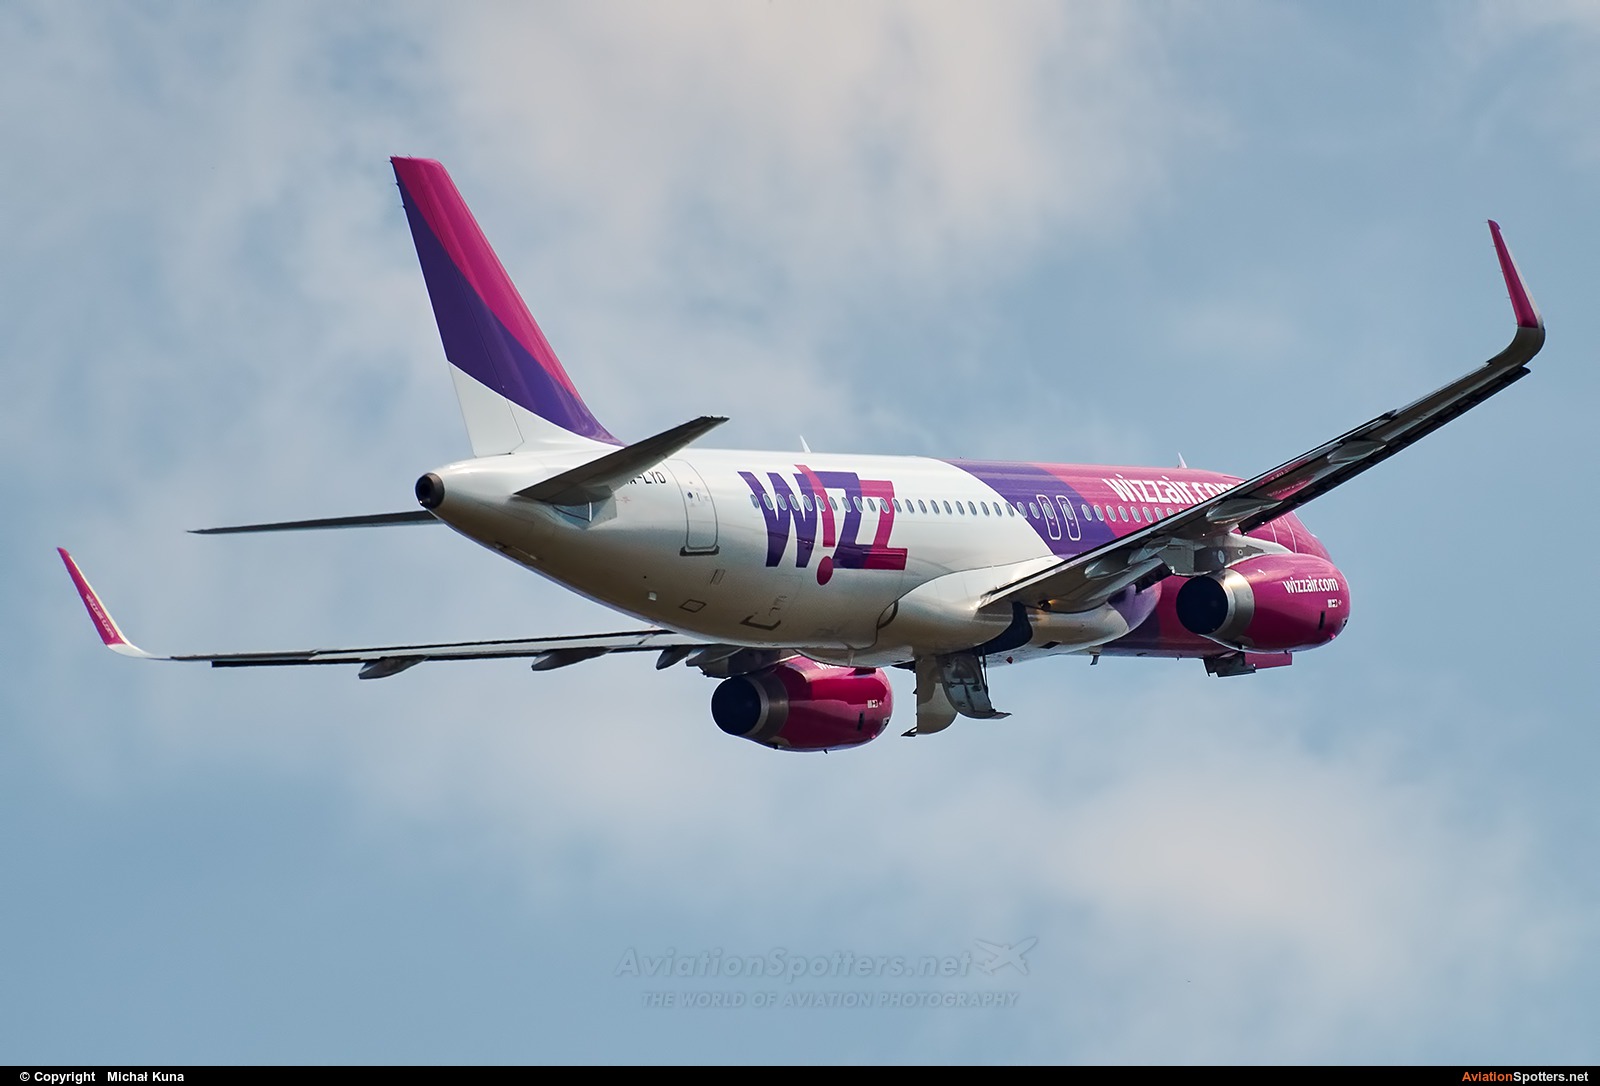 Wizz Air  -  A320-232  (HA-LYD) By Michał Kuna (big)